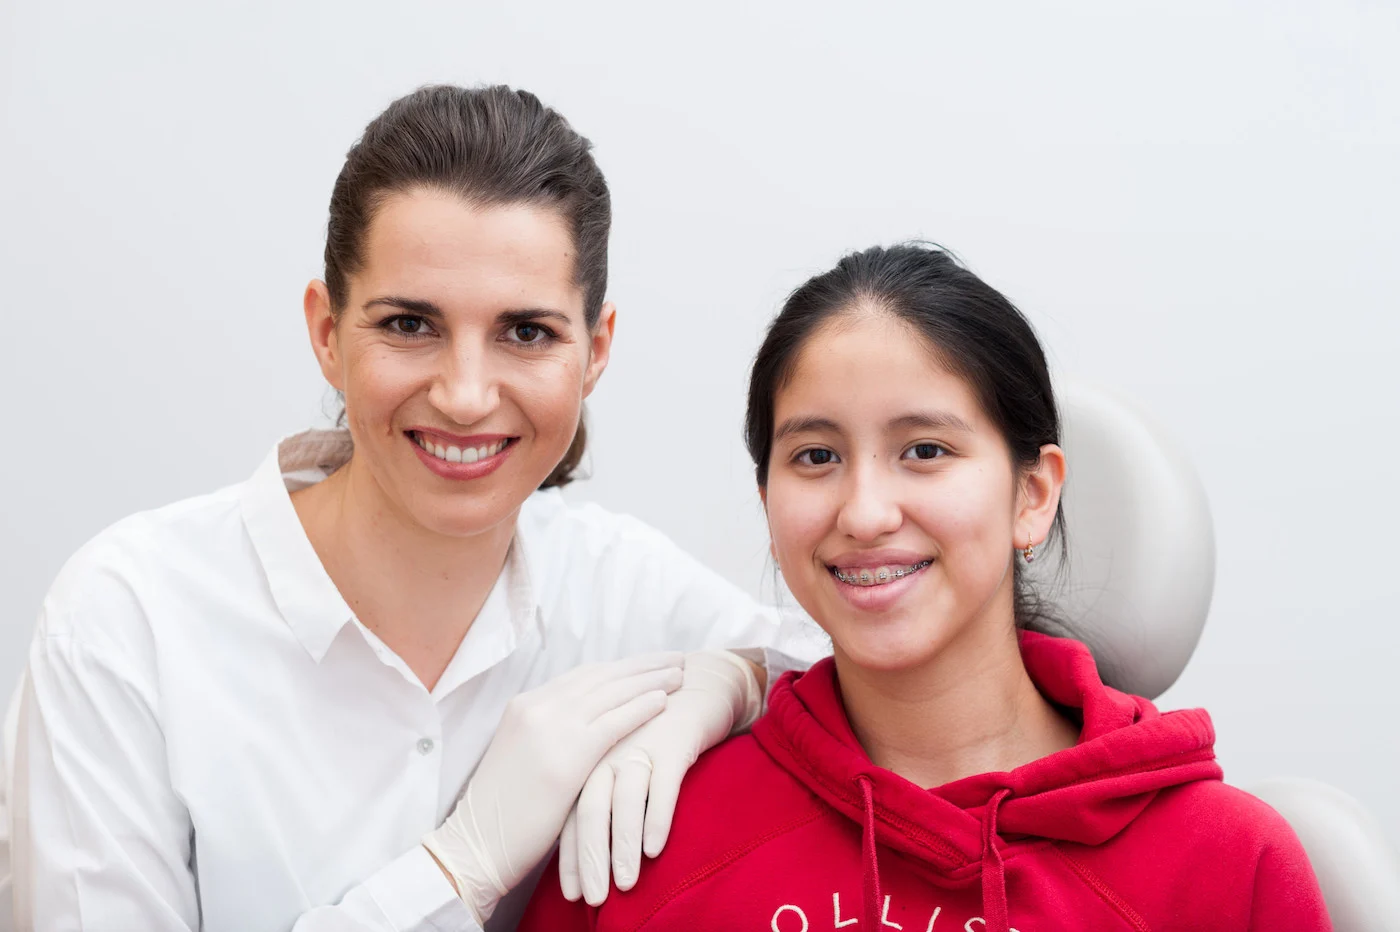 Dr. Elisatbeth Pittschieler mit jugendlicher Zahnspangen Patientin